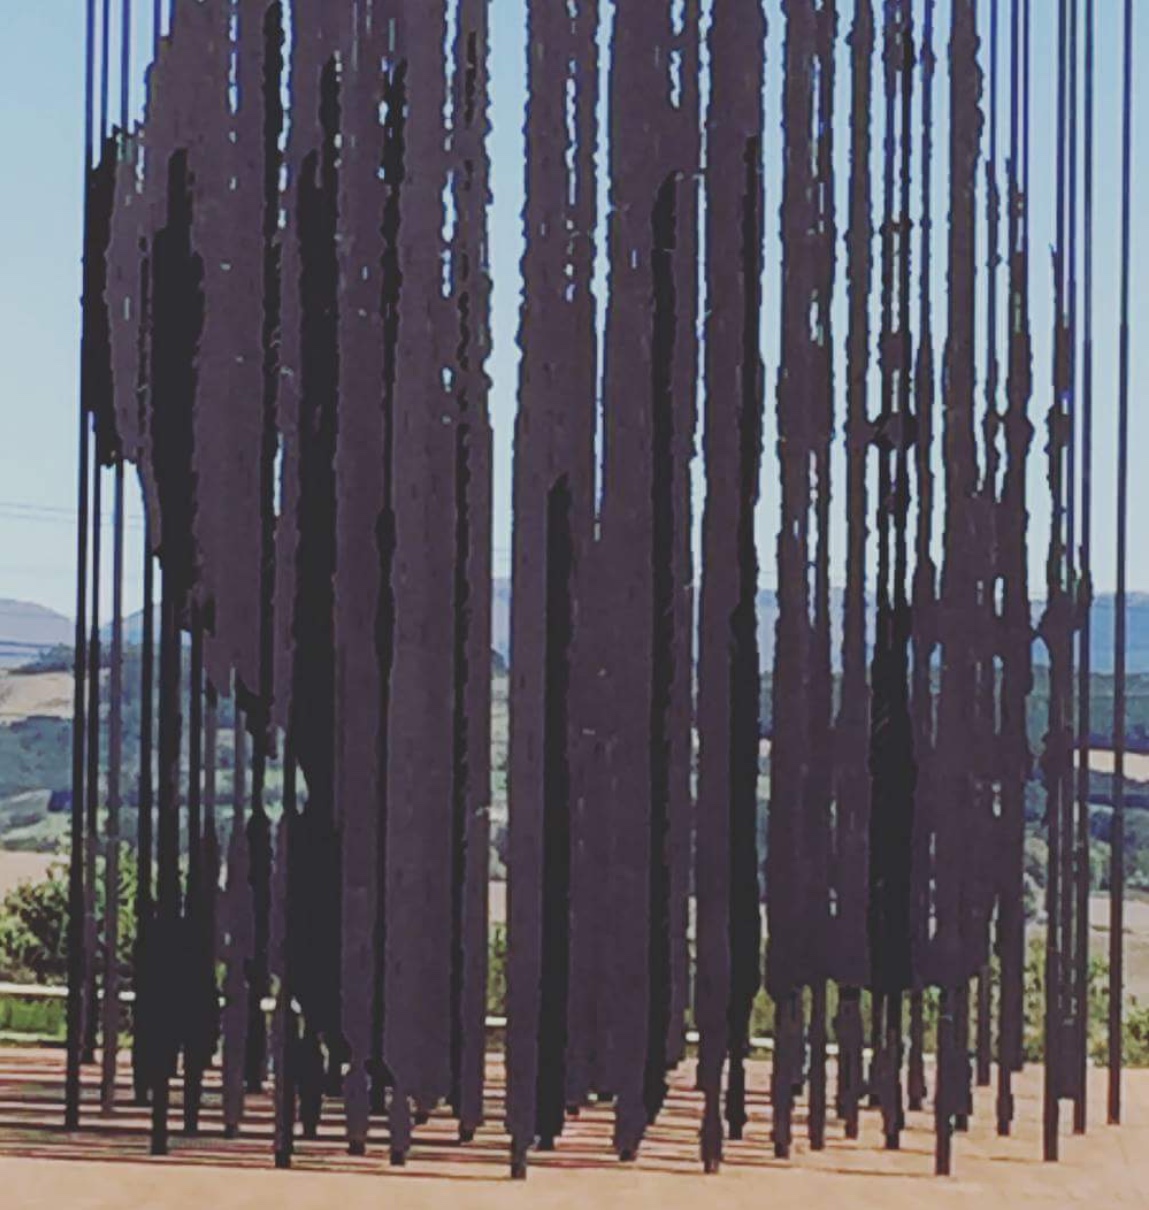 Traces de Mandela dans une grande sculpture métallique au milieu d'un champ en Afrique du Sud.